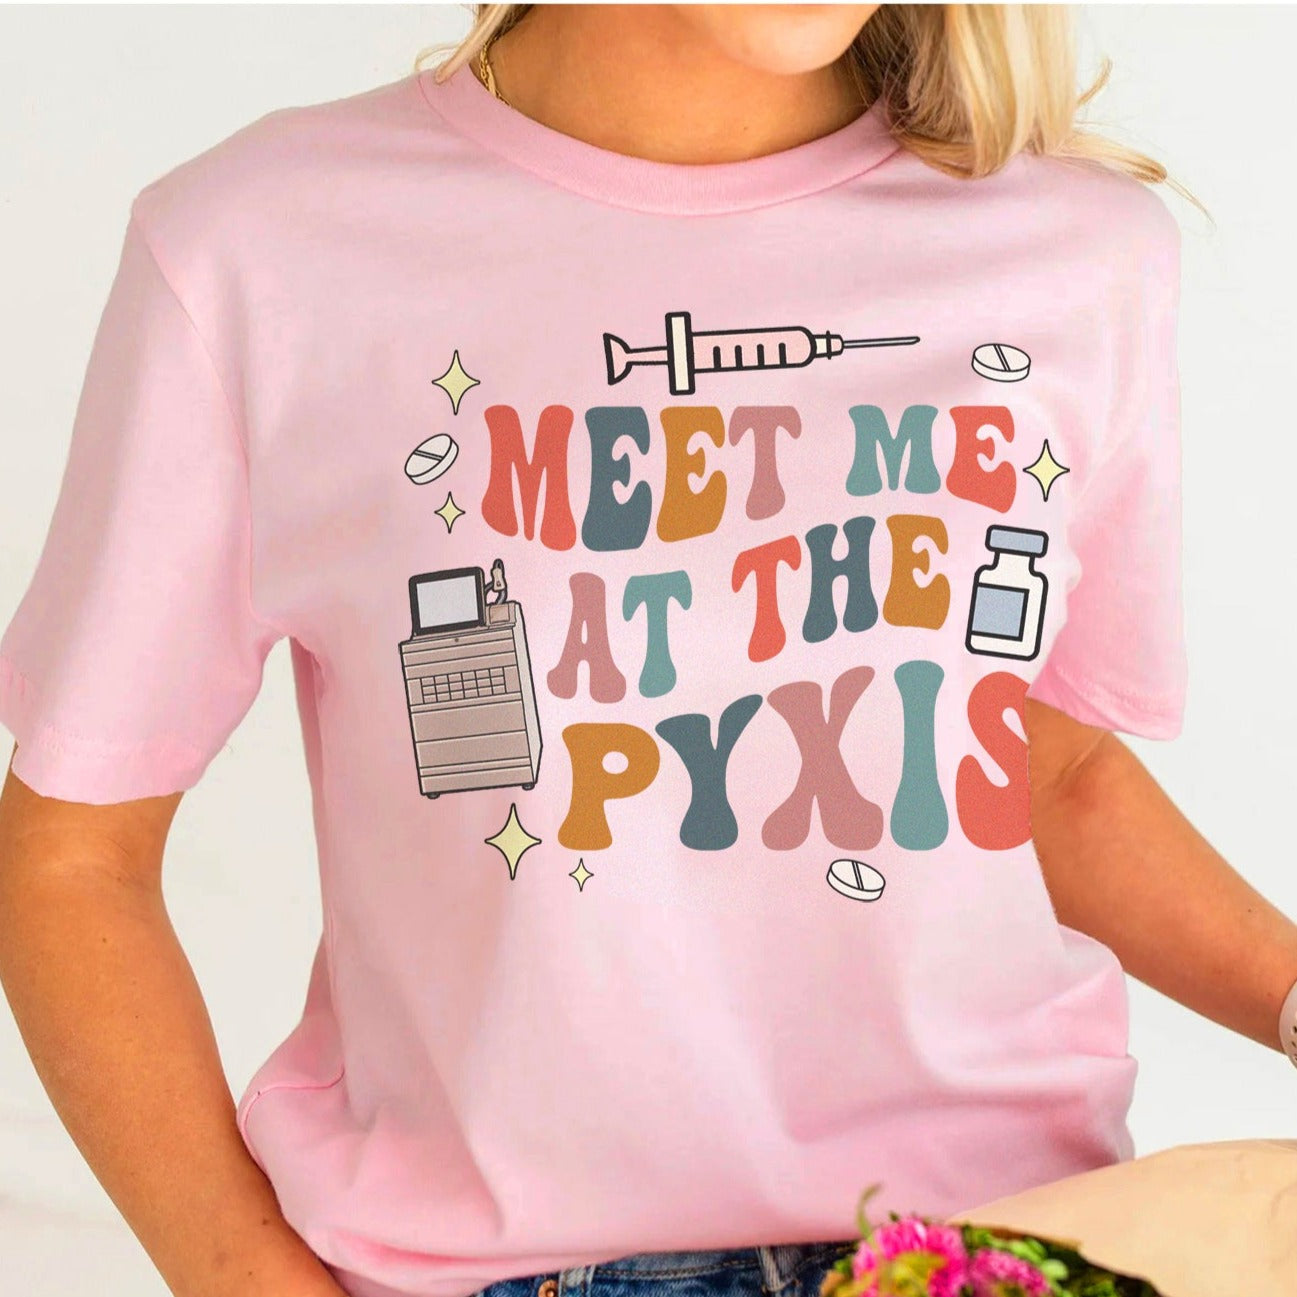 Meet Me at the Pyxis T-Shirt